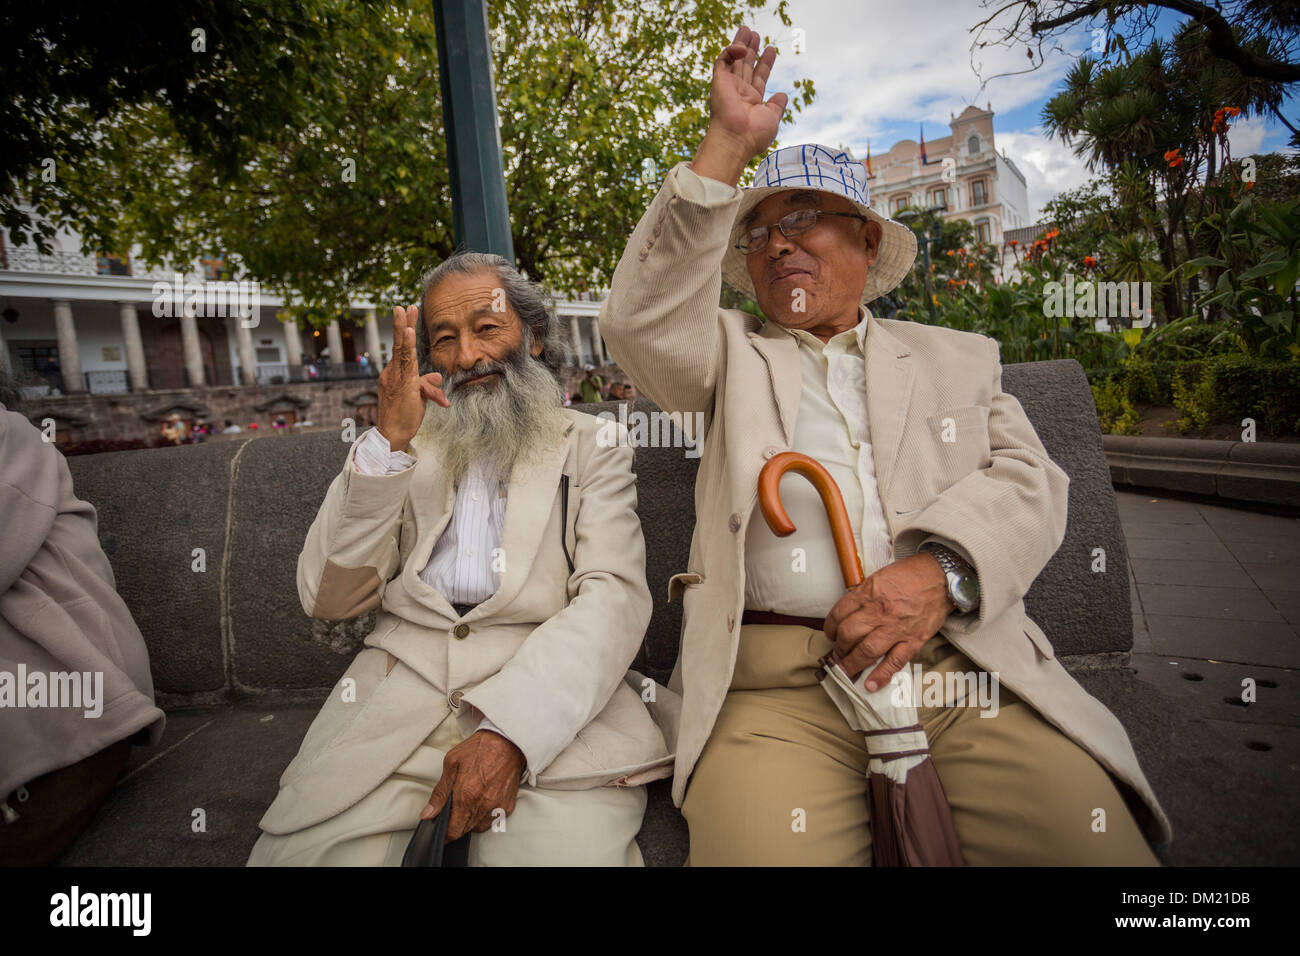 Men signing in sign language - Central Plaza, Quito, Ecuador. Stock Photo